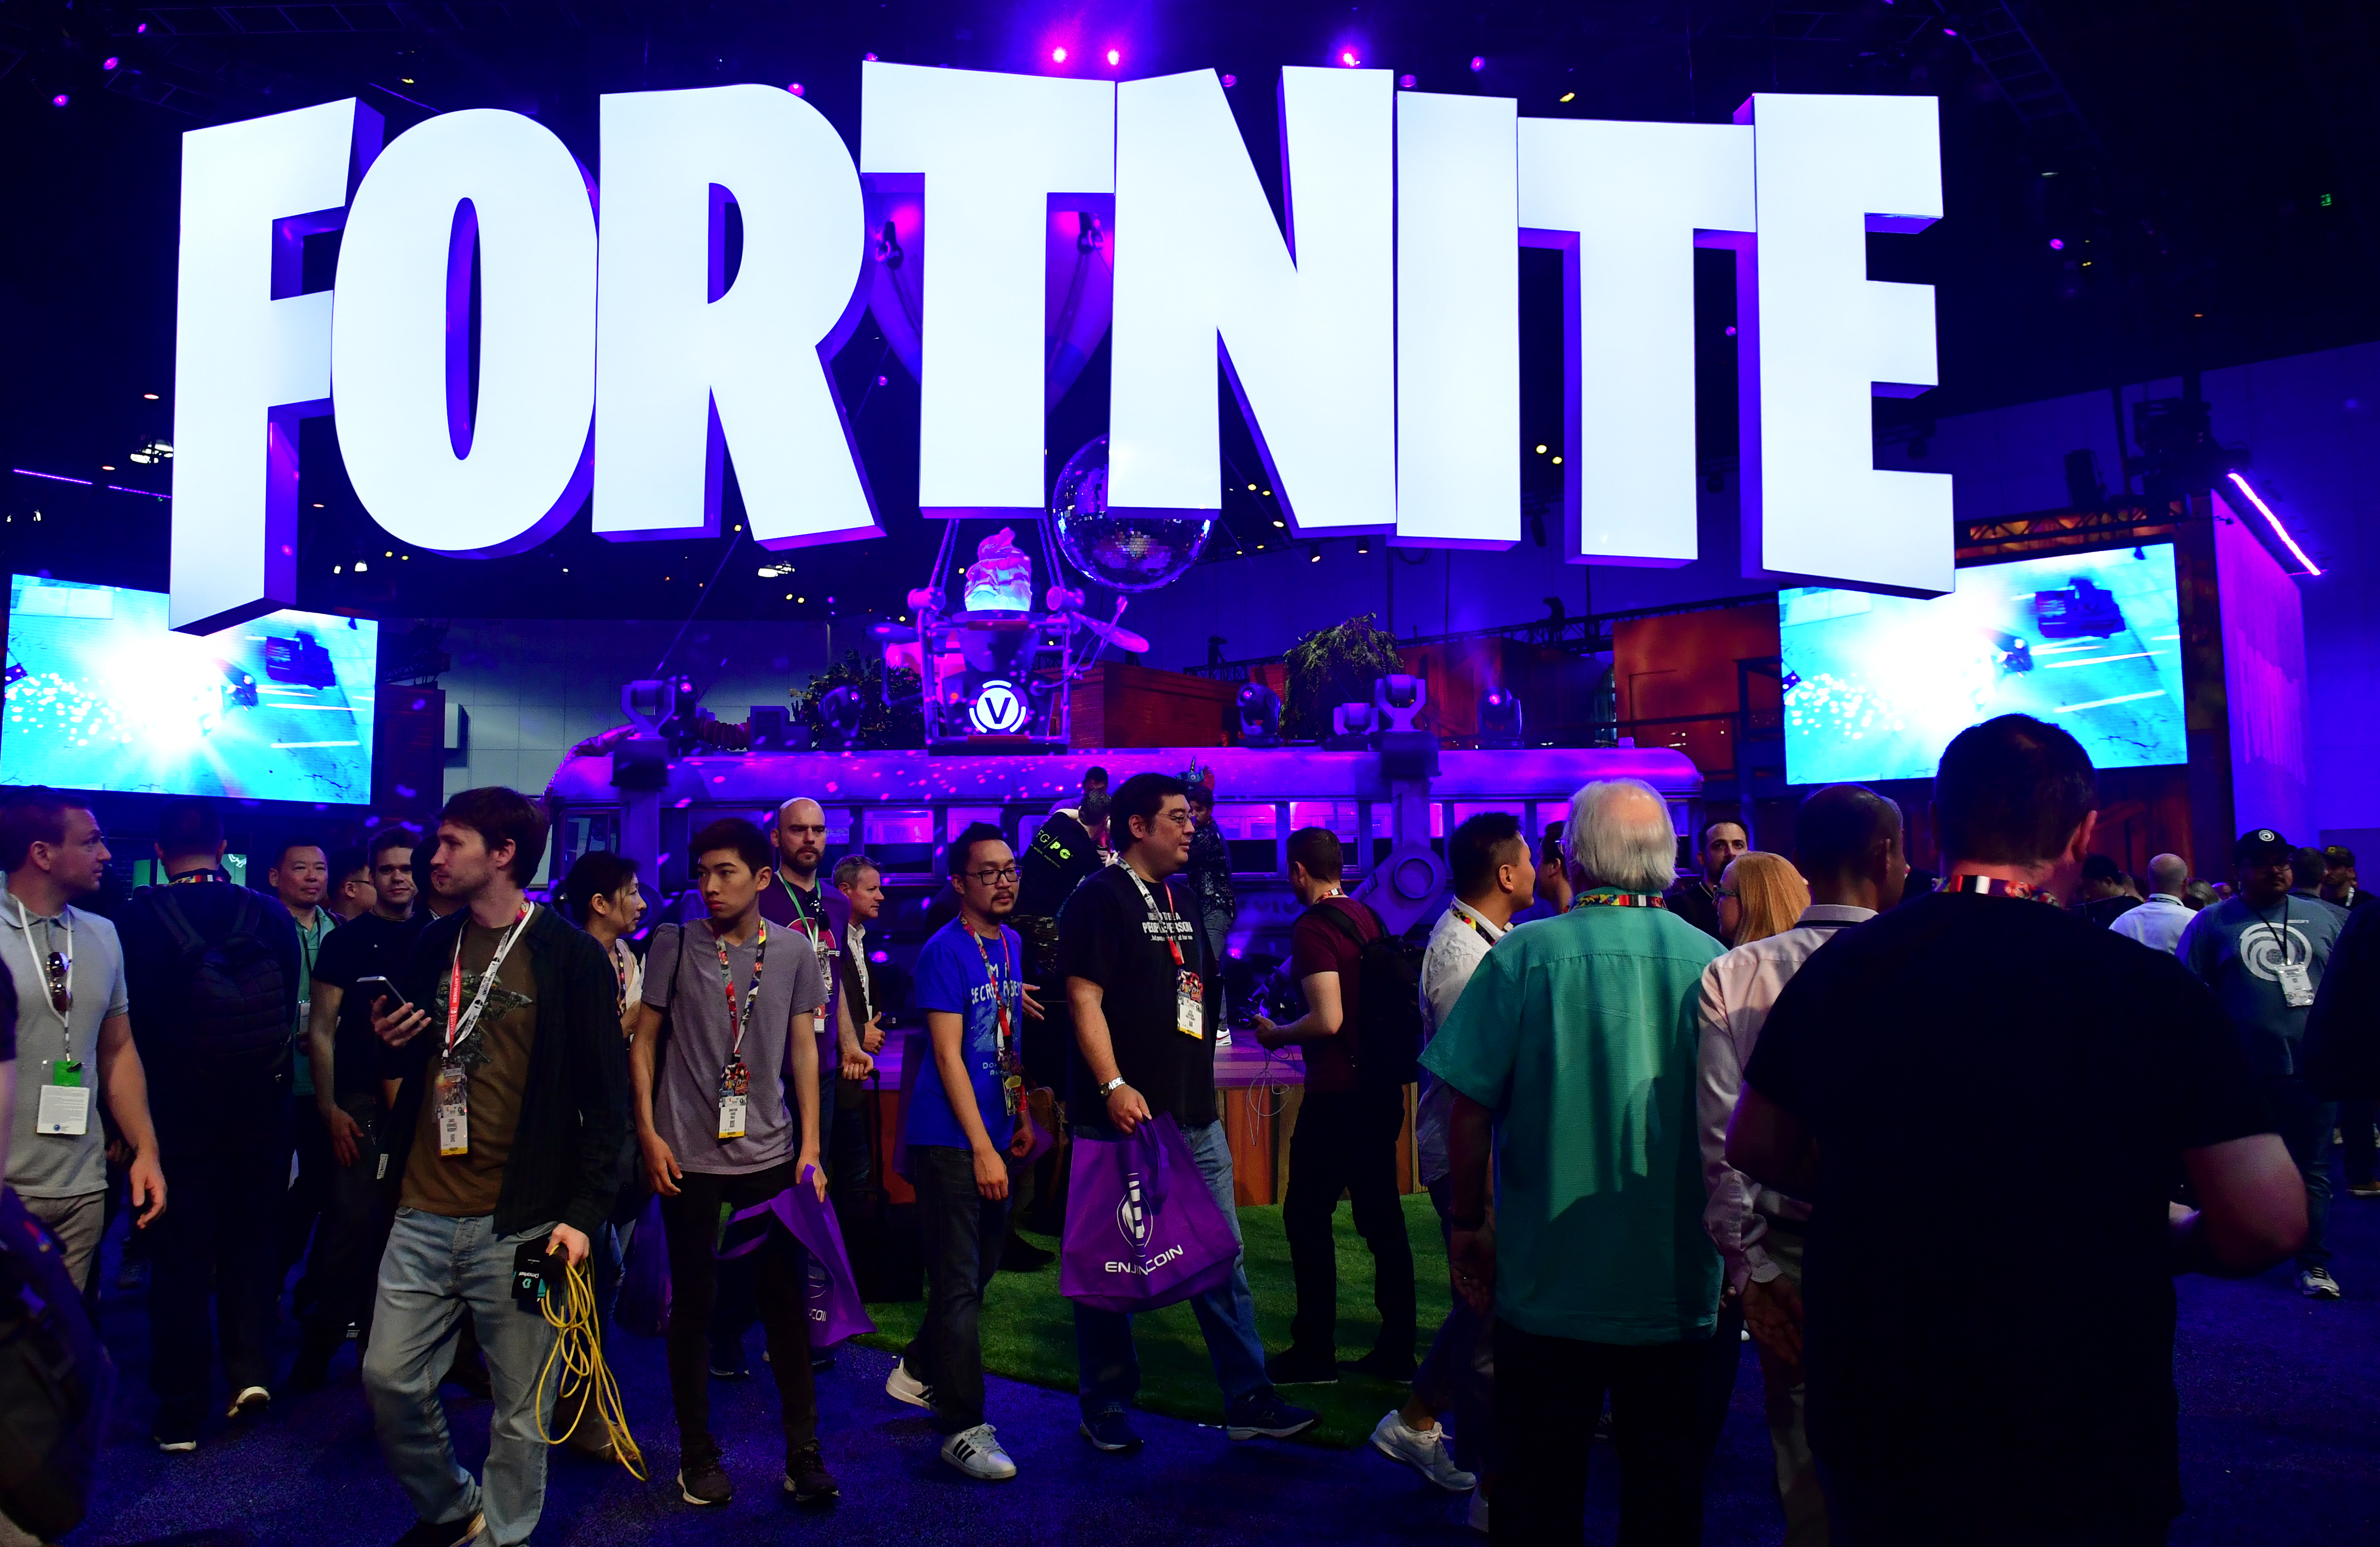 ¿Por qué China prohibió el popular videojuego Fortnite y causó gran controversia?